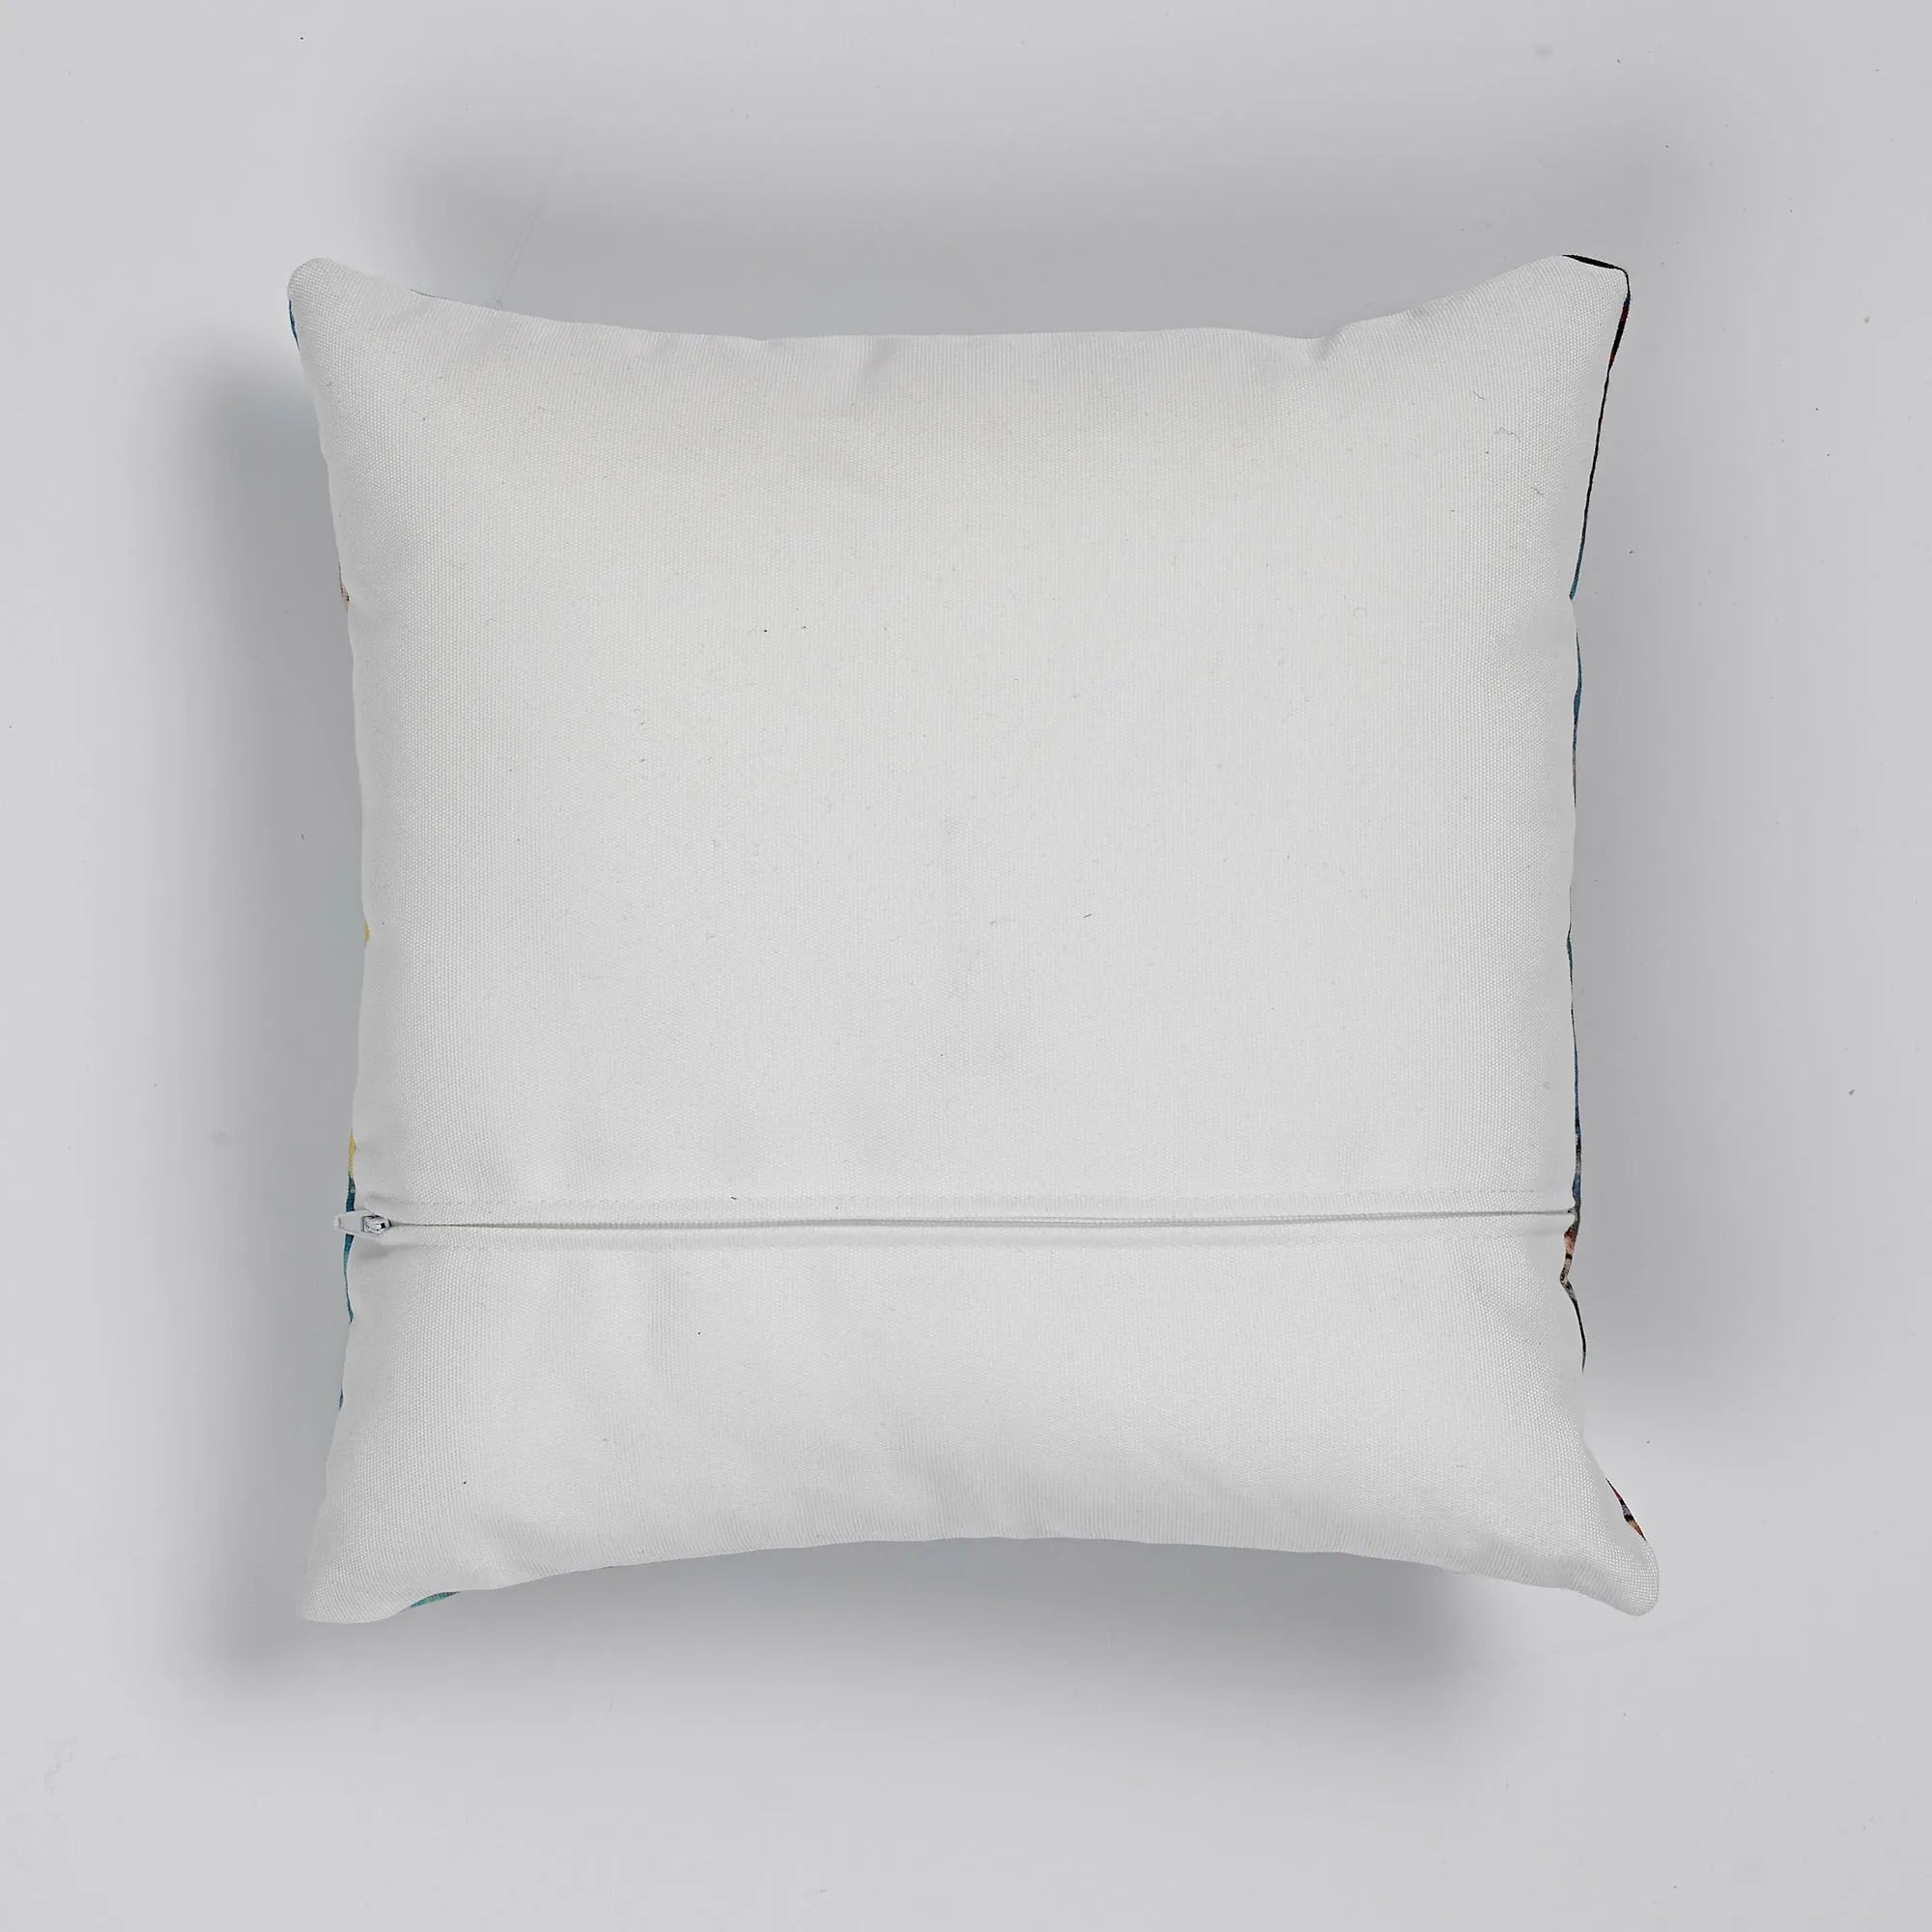 Over The Rainbow Cushion - Decorative Throw Pillow - Throw Pillows - Aesthetic Art